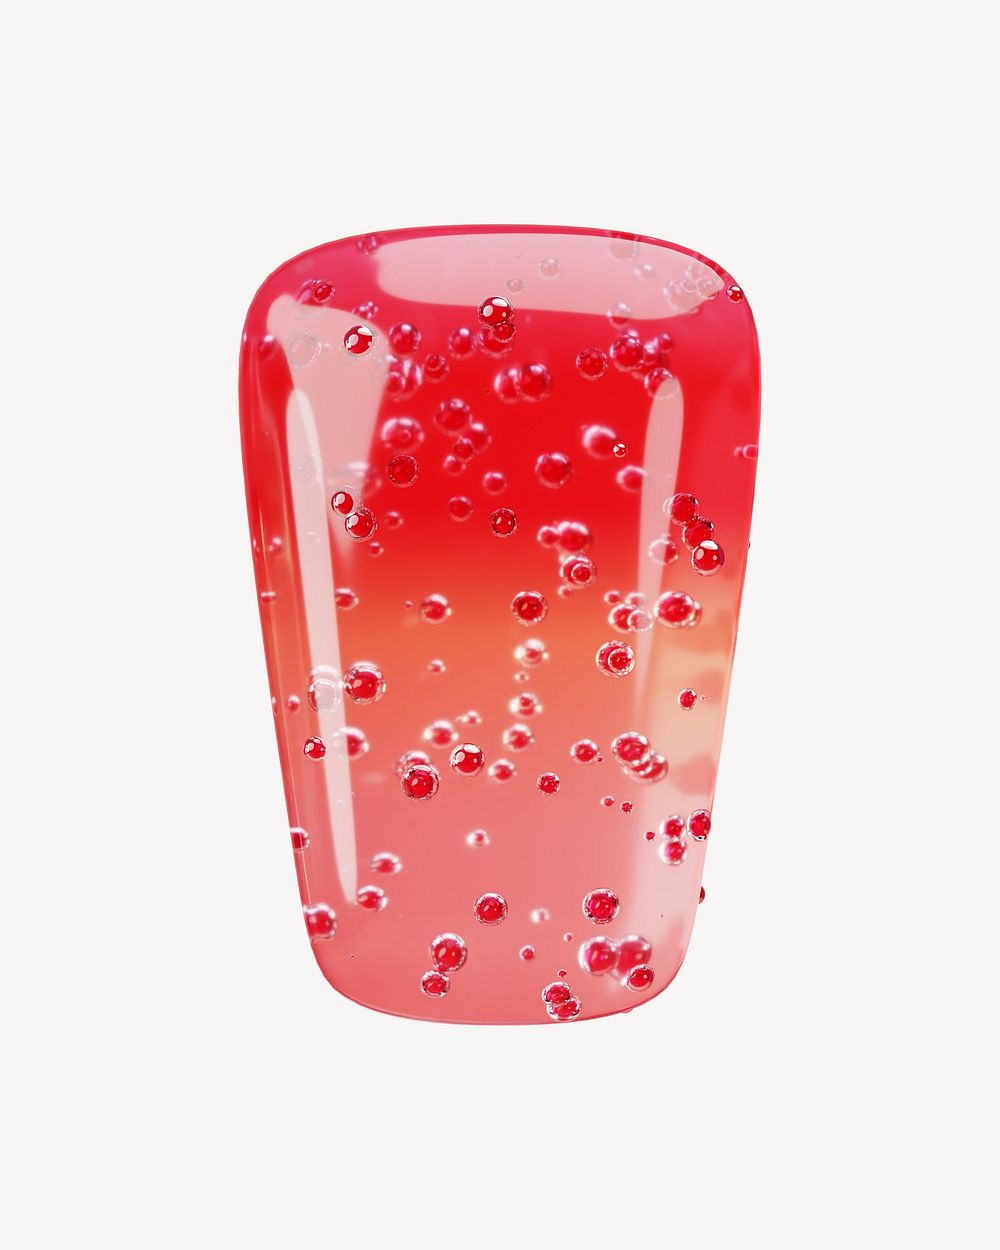 Prime sign, 3D red jelly symbol illustration